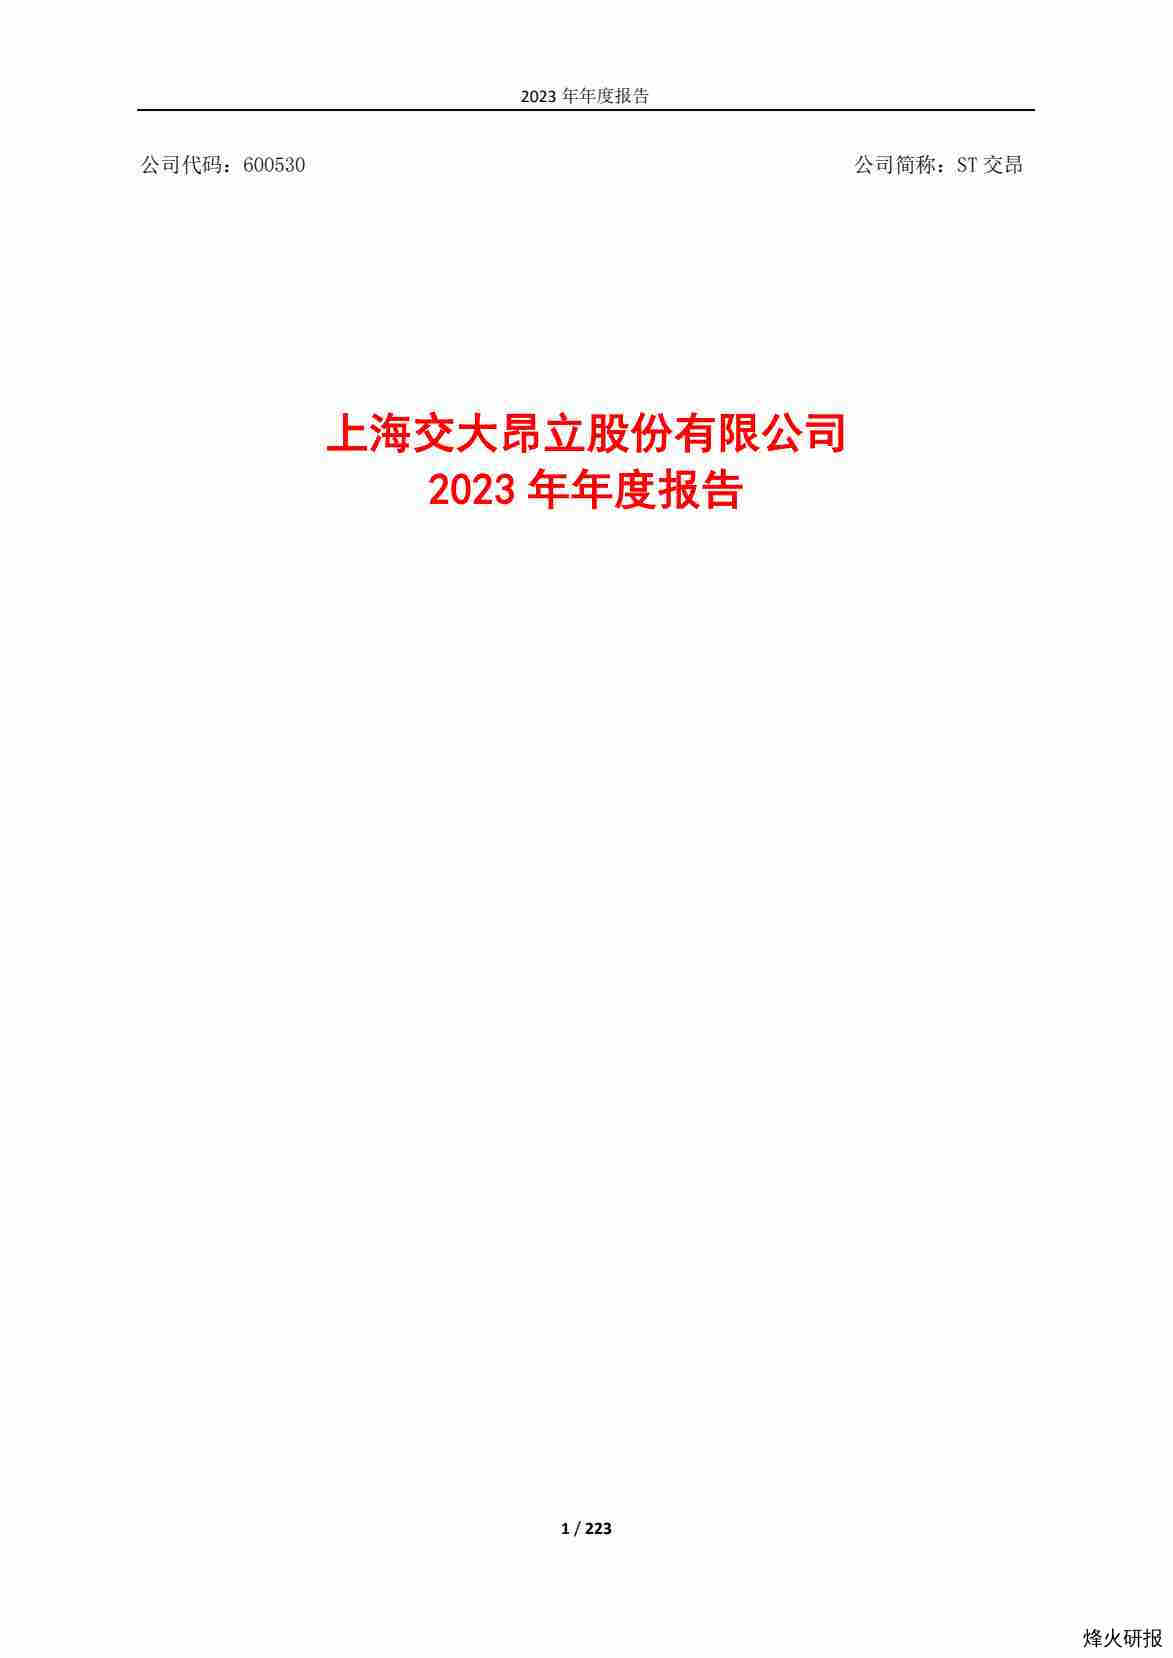 【财报】ST交昂：2023年年度报告.pdf-第一页